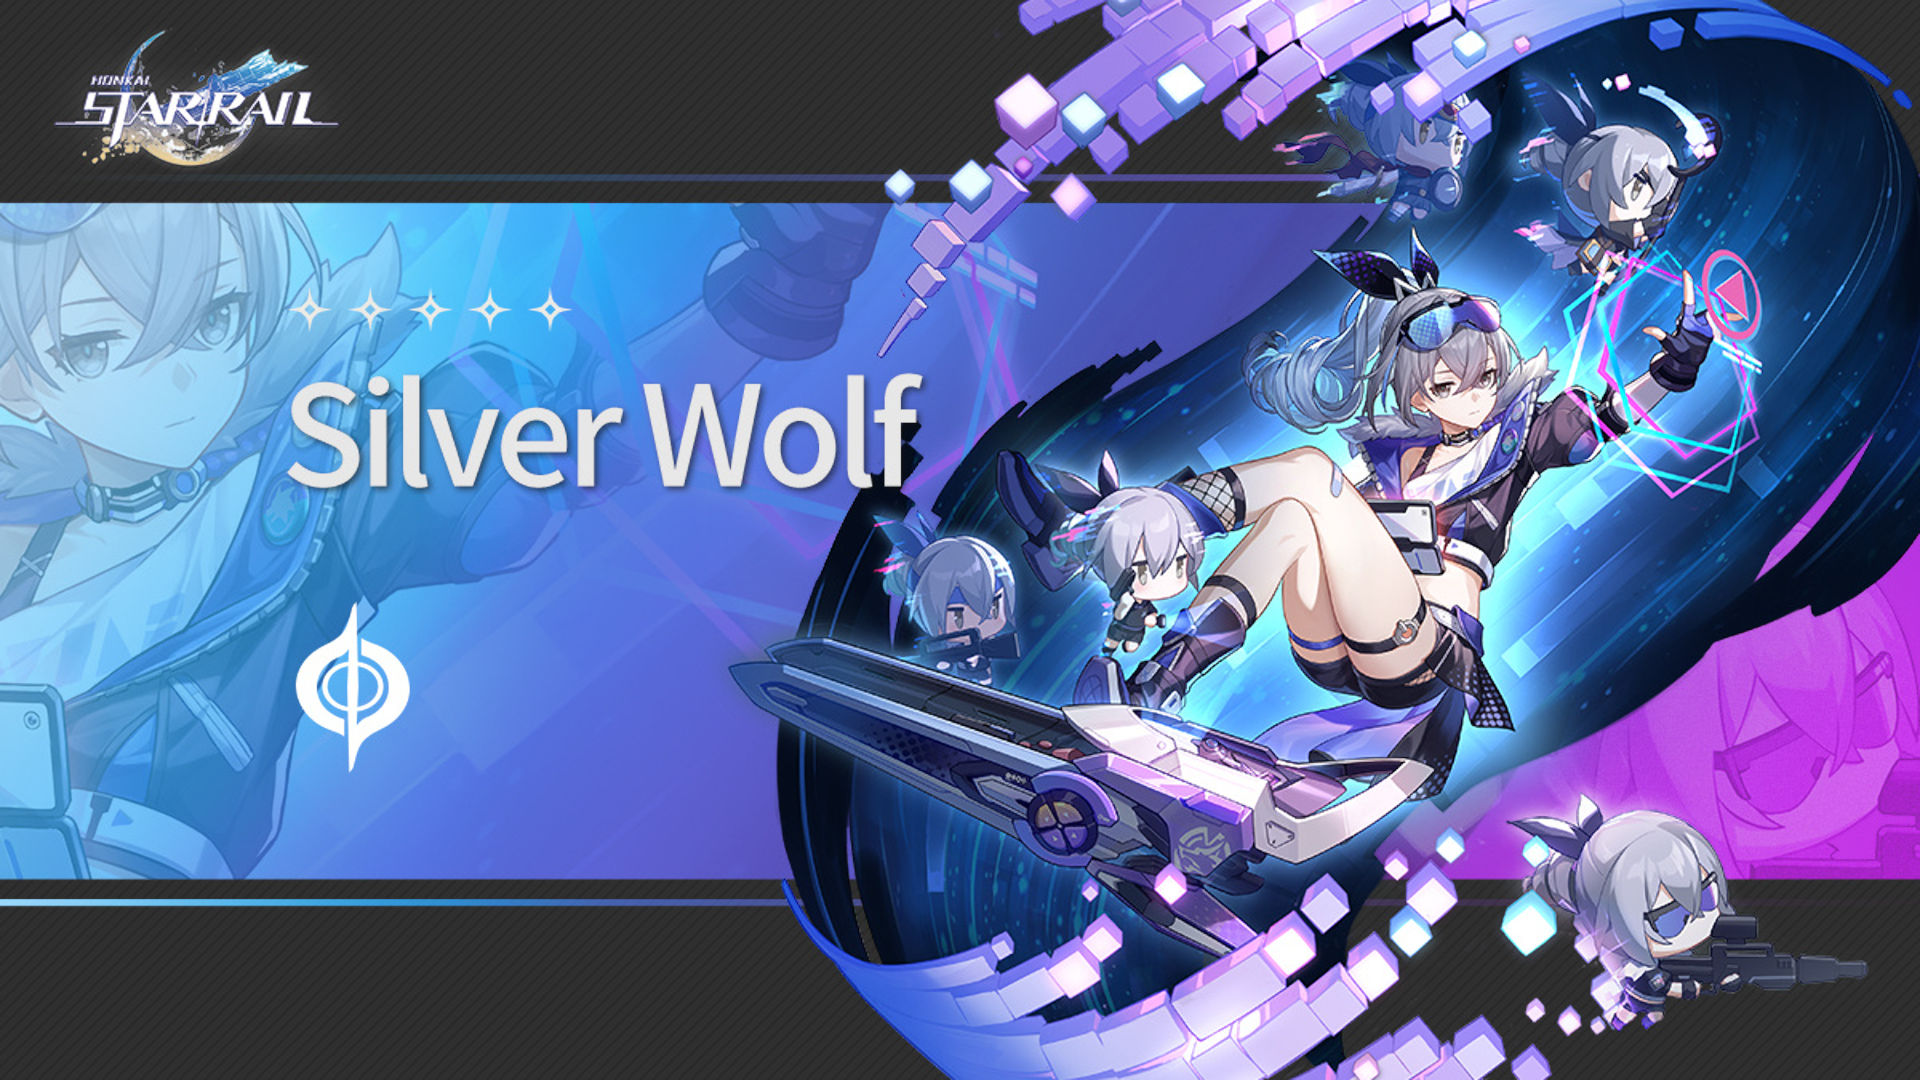 Honkai Star Rail Silver Wolf